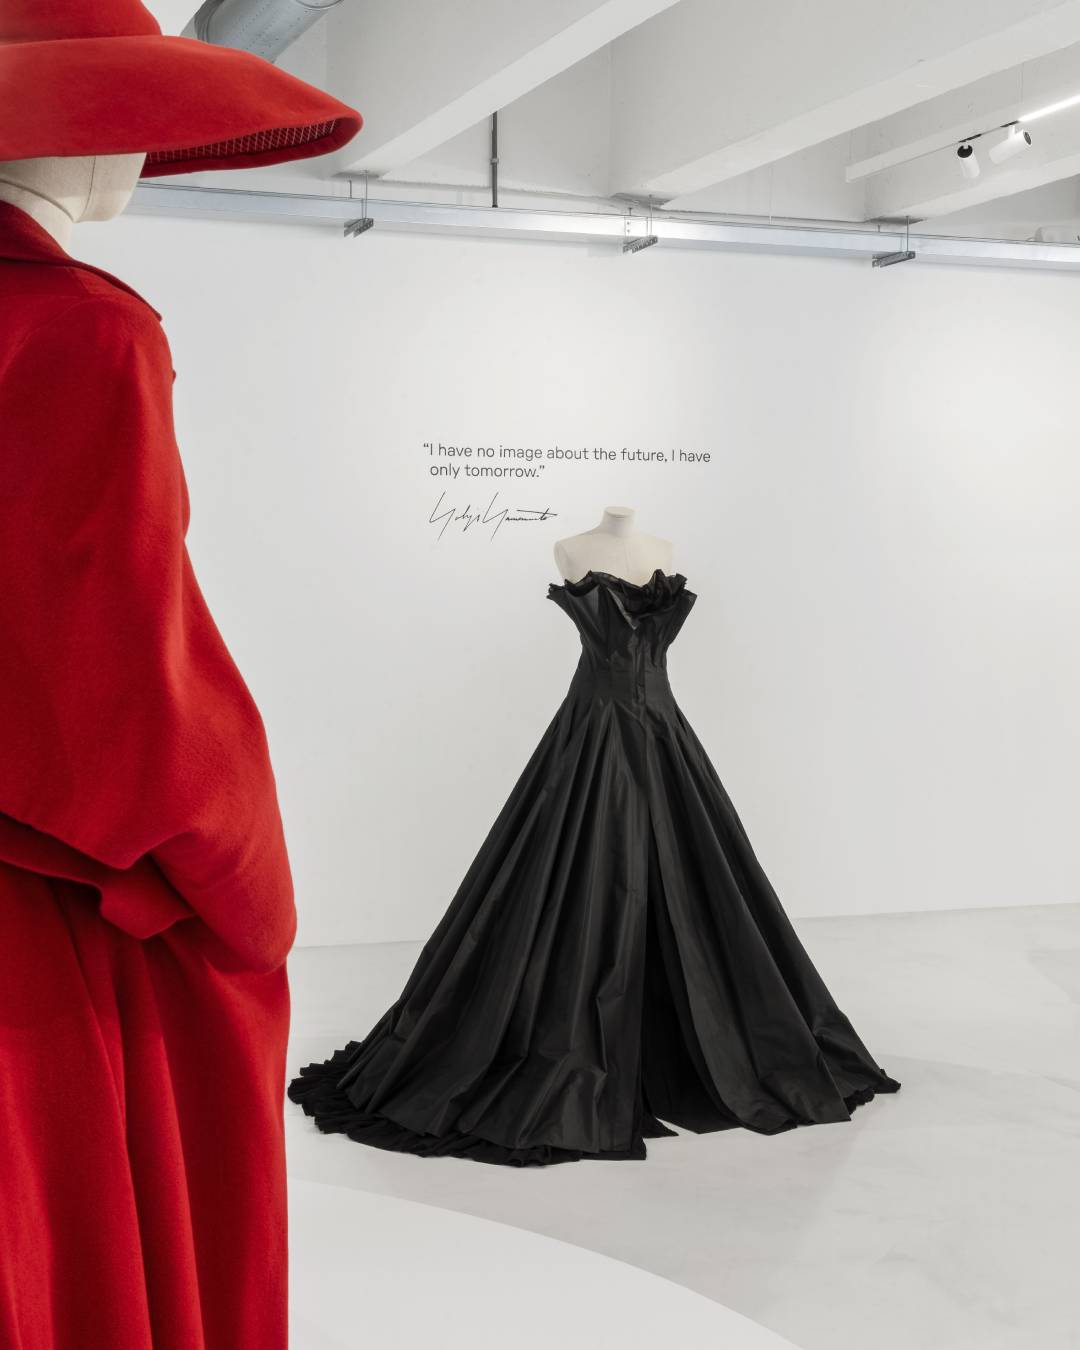 La nuova esposizione di Yohji Yamamoto è un inno al futuro  Si intitola Letter to the future e comprende 25 abiti 